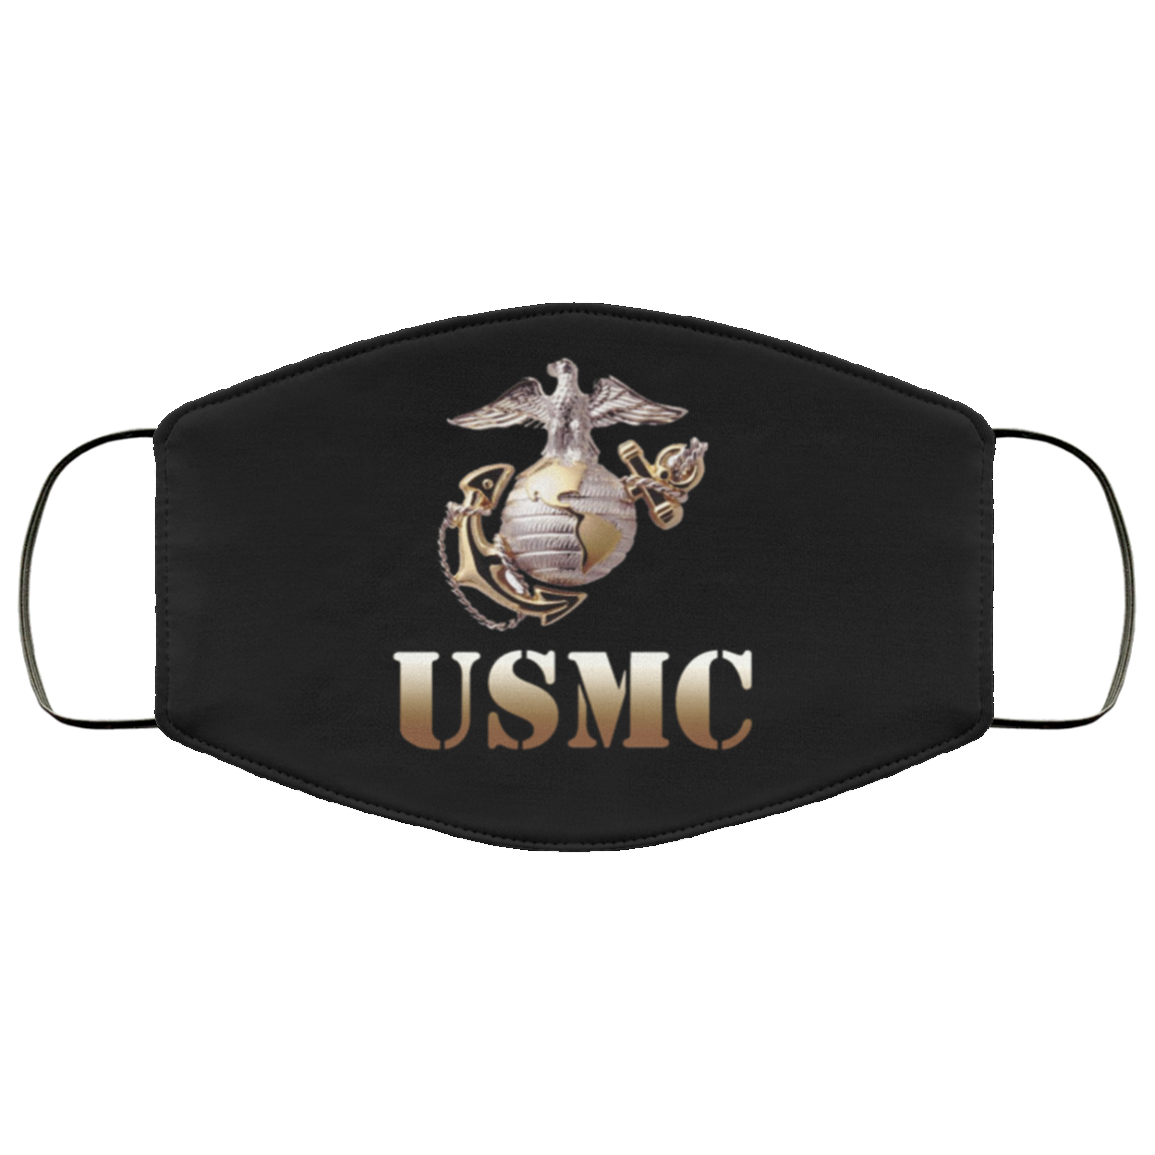 Usmc Marine Corps Face Mask